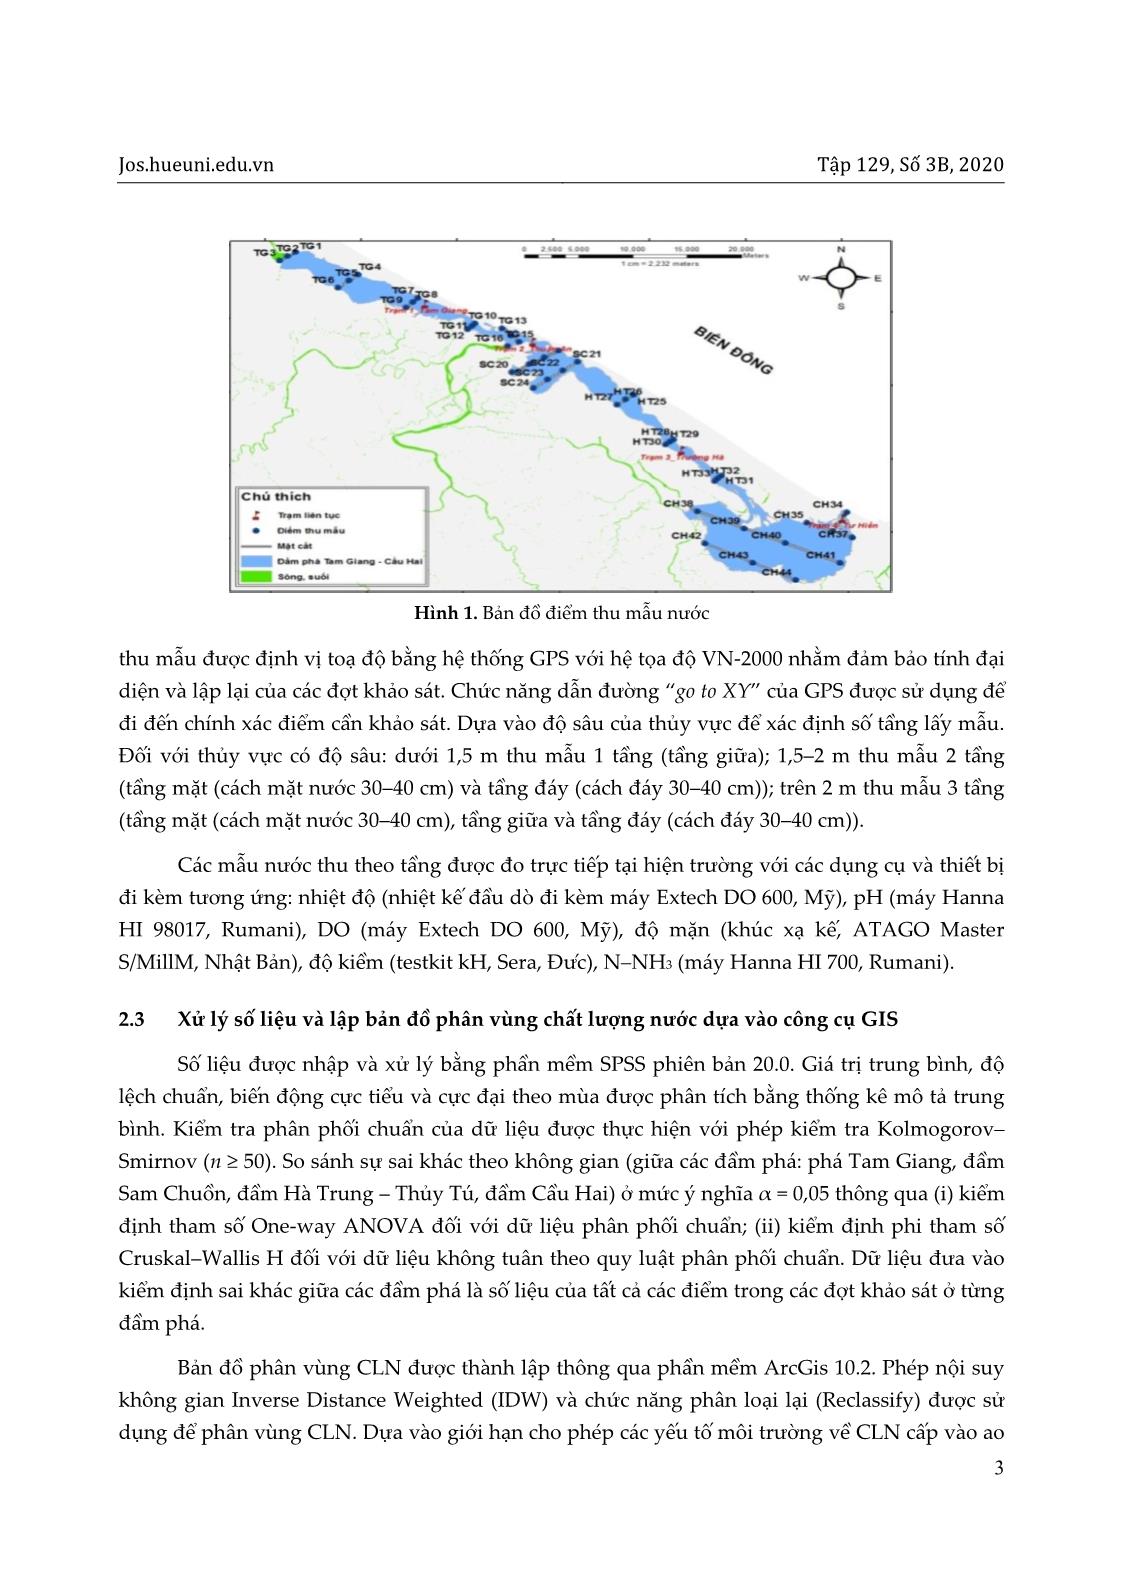 Phân vùng chất lượng nước cho nuôi tôm ở đầm phá Tam Giang – Cầu Hai, tỉnh Thừa Thiên Huế với sự hỗ trợ của GIS trang 3